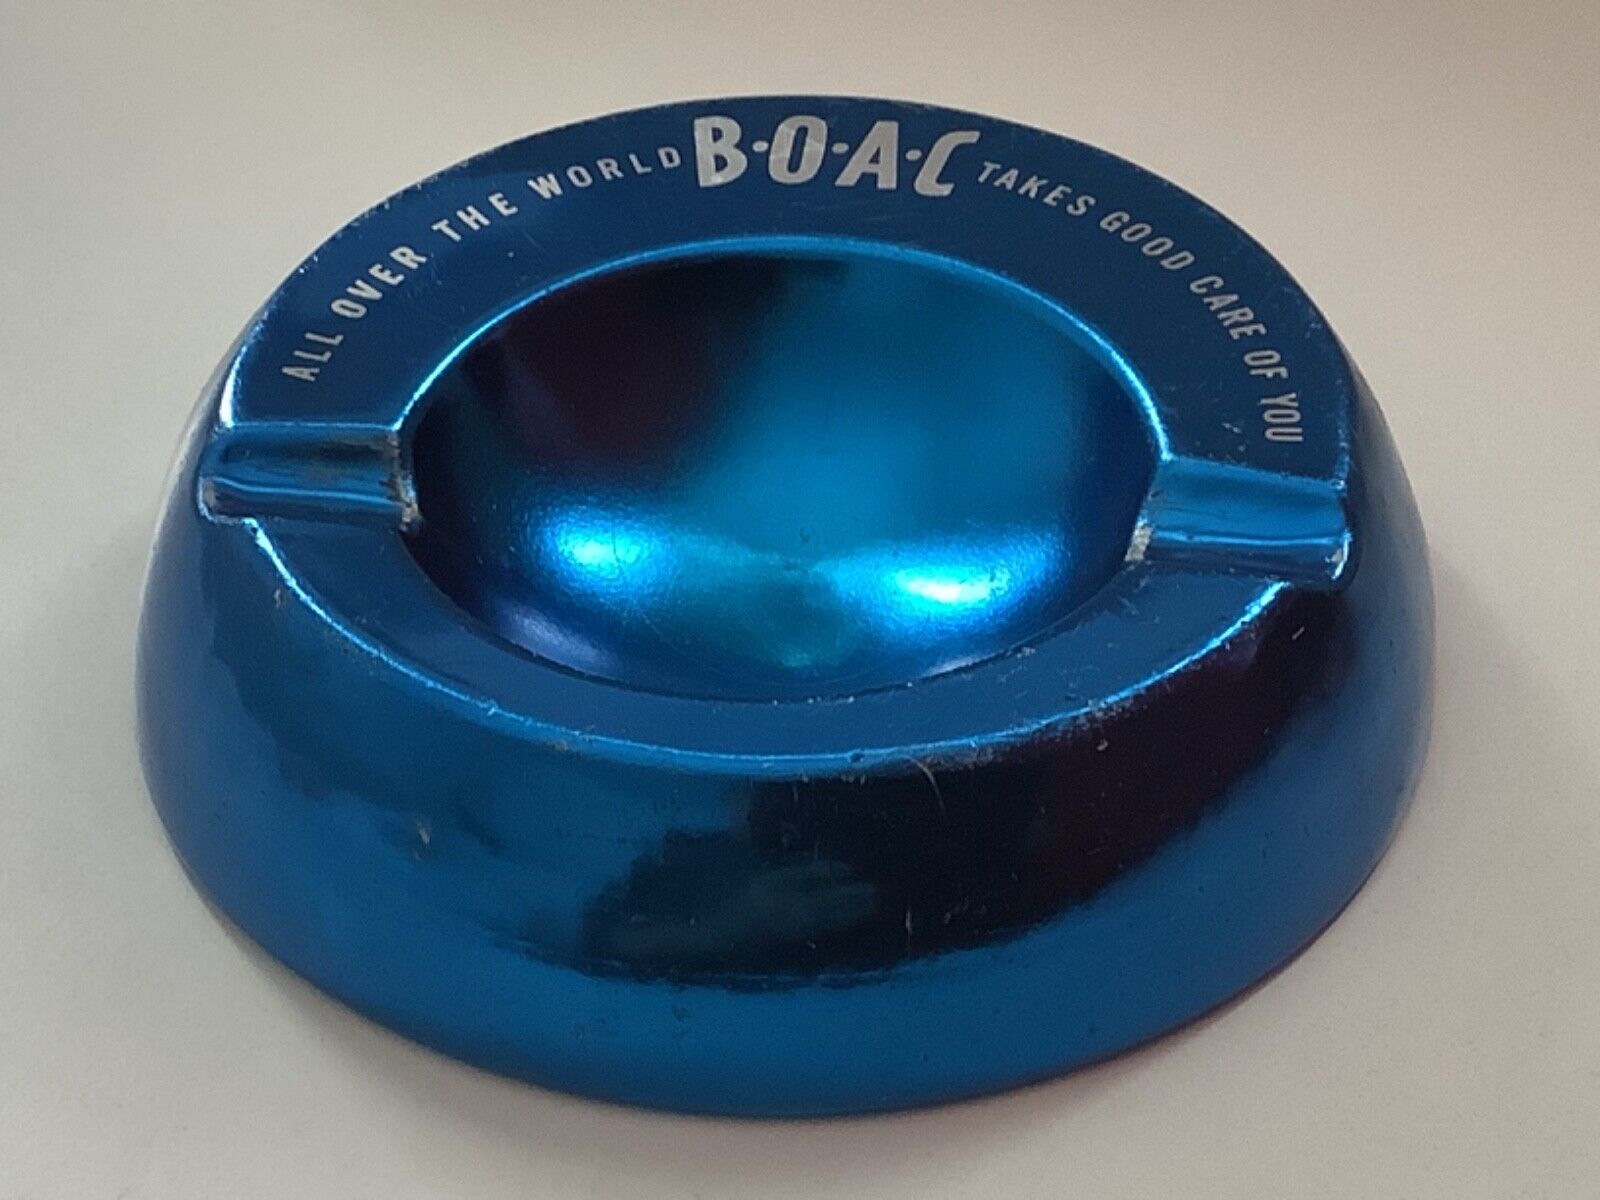 BOAC aluminium ashtray ALL OVER THE WORLD B.O.A.C TAKES CARE OF YOU 5ins 12.5cm